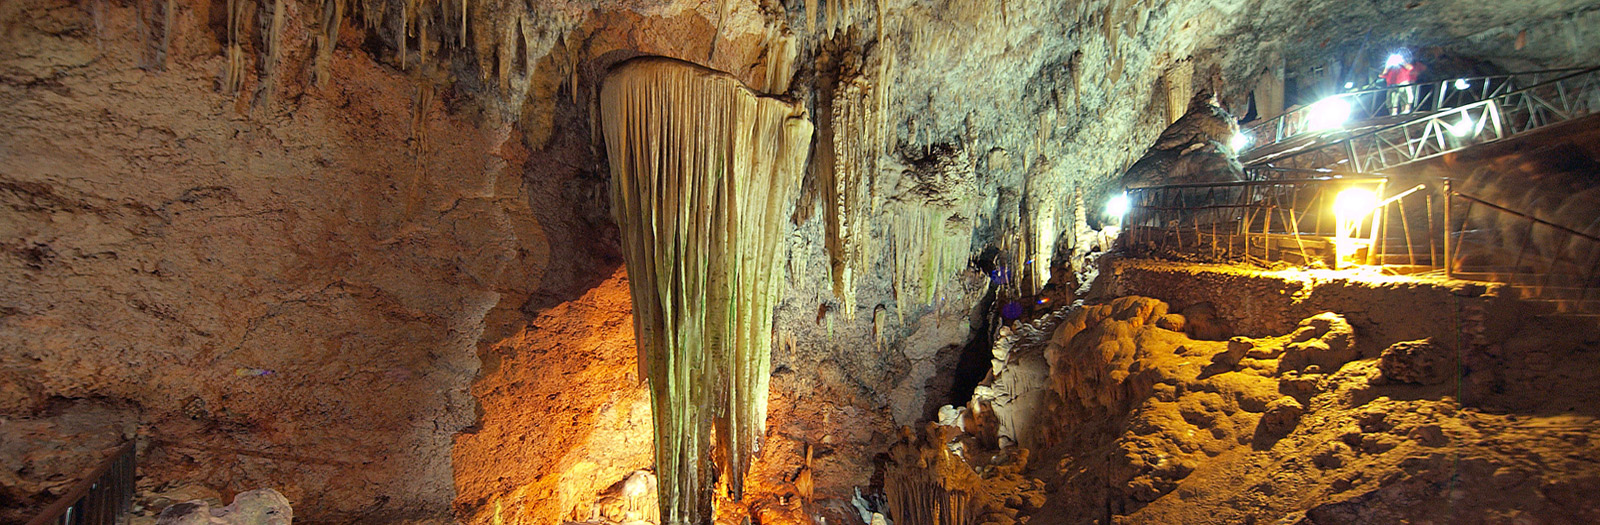 bellamar caves